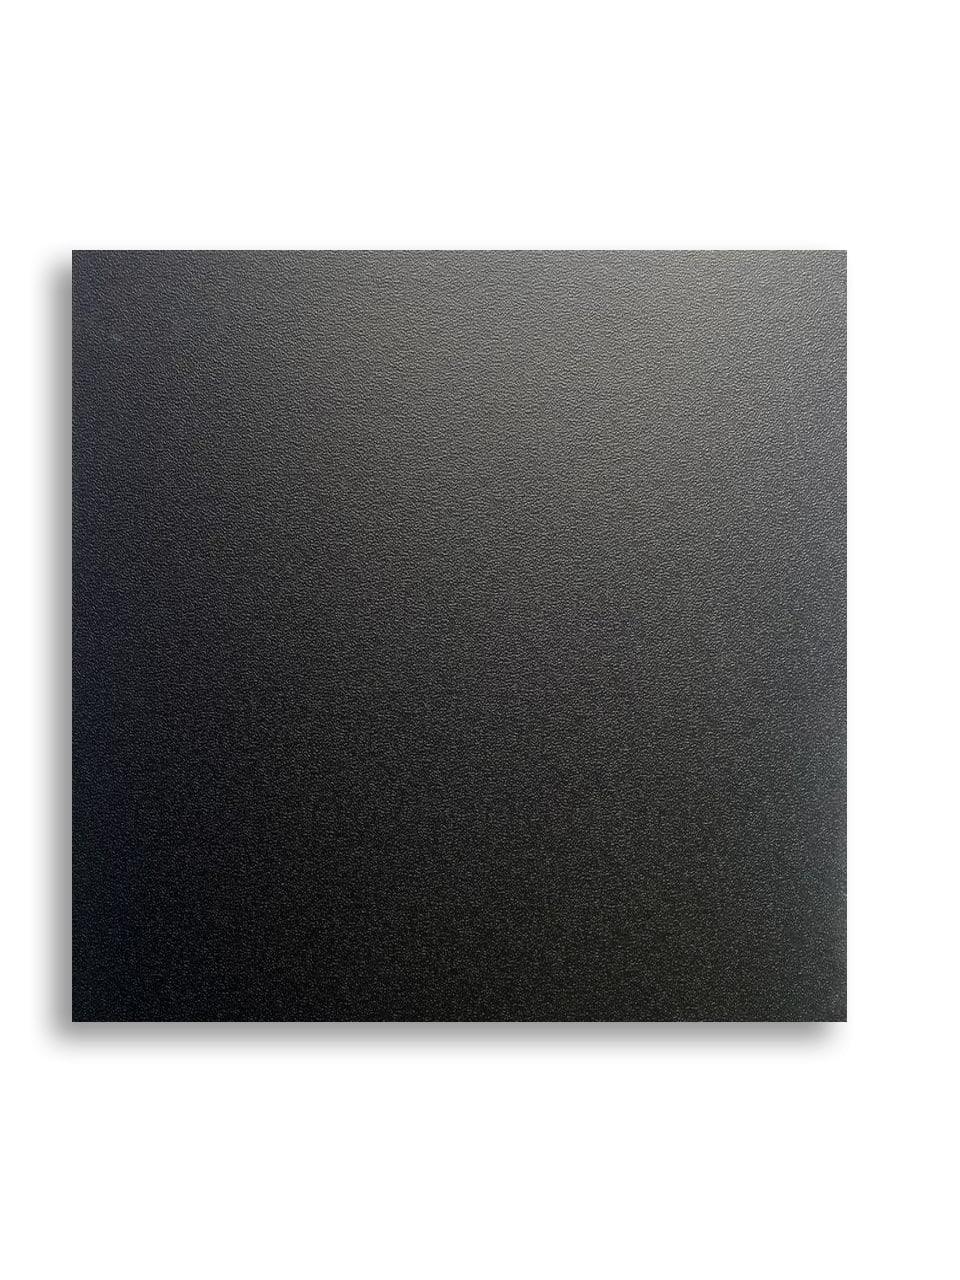 Плита подвесного потолка MONERTE с виниловым покрытием 595х595х8 мм Черный (6401214)